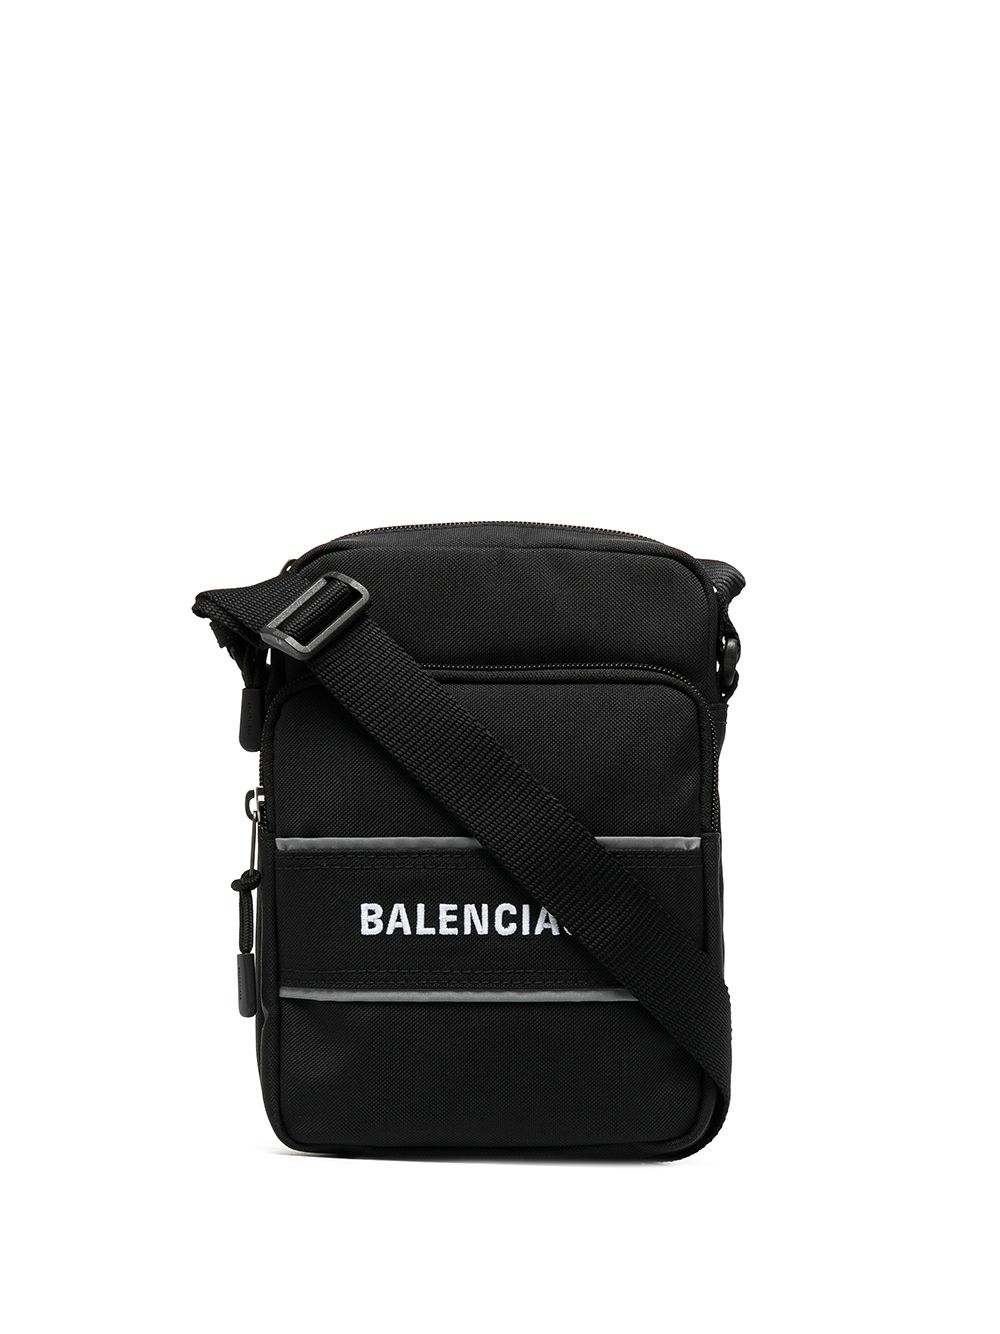 Balenciaga logo-print messenger bag - Black